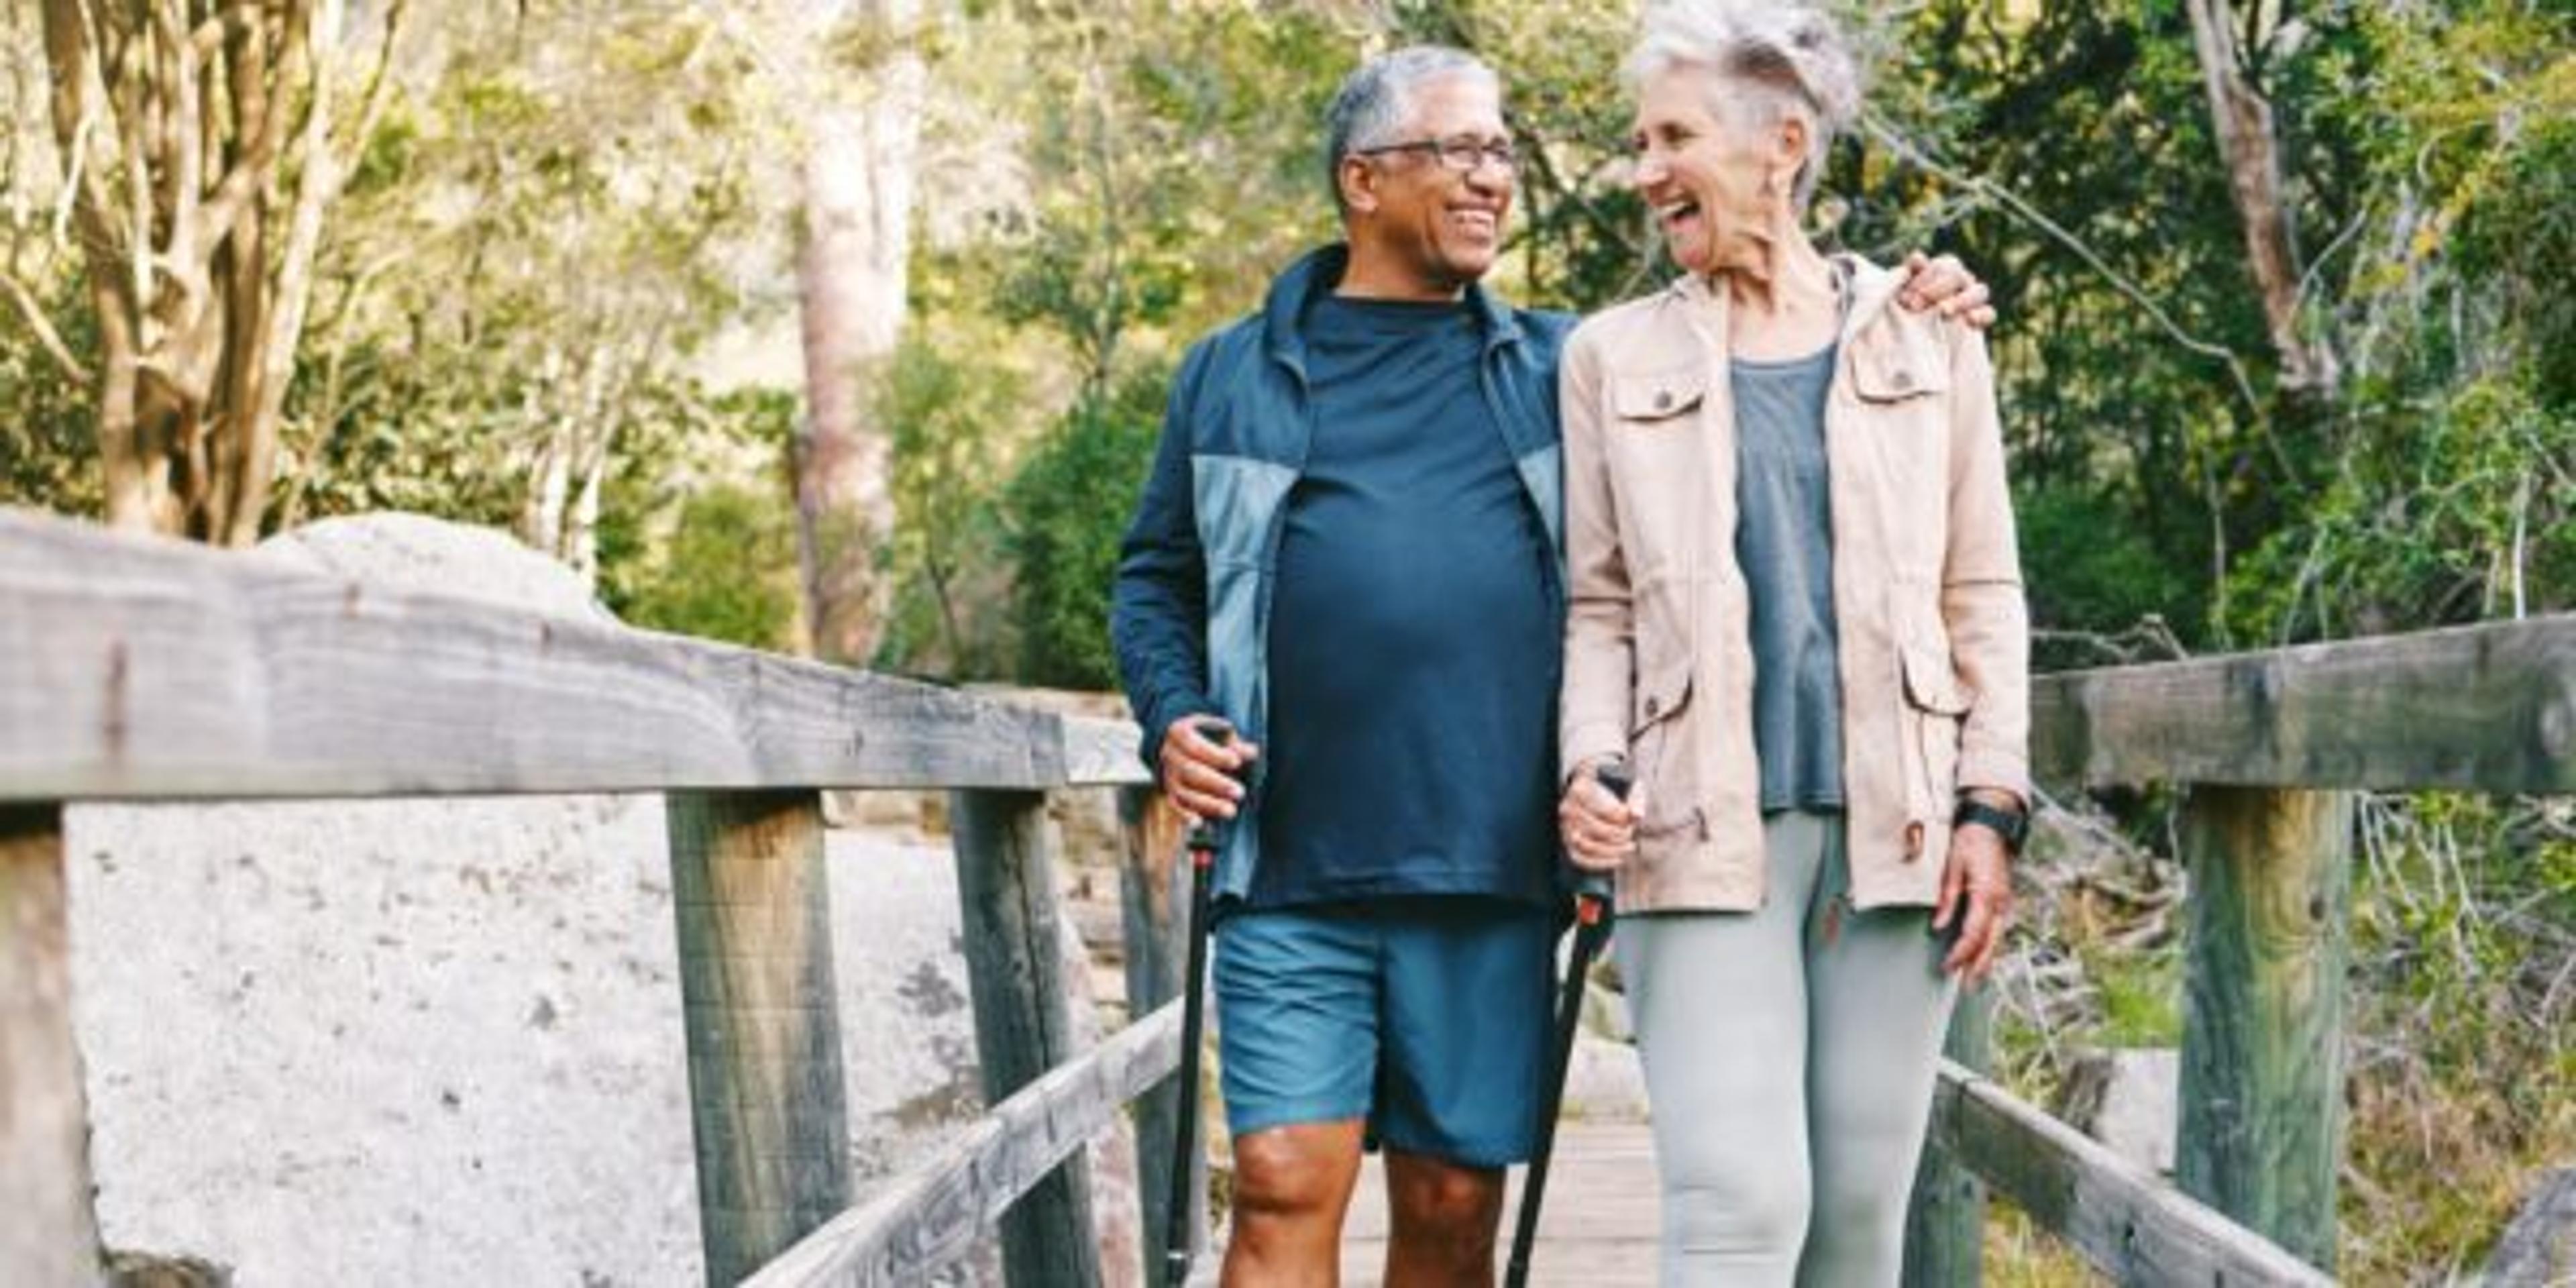 Senior couple hikes to protect their brain health through a healthy lifestyle